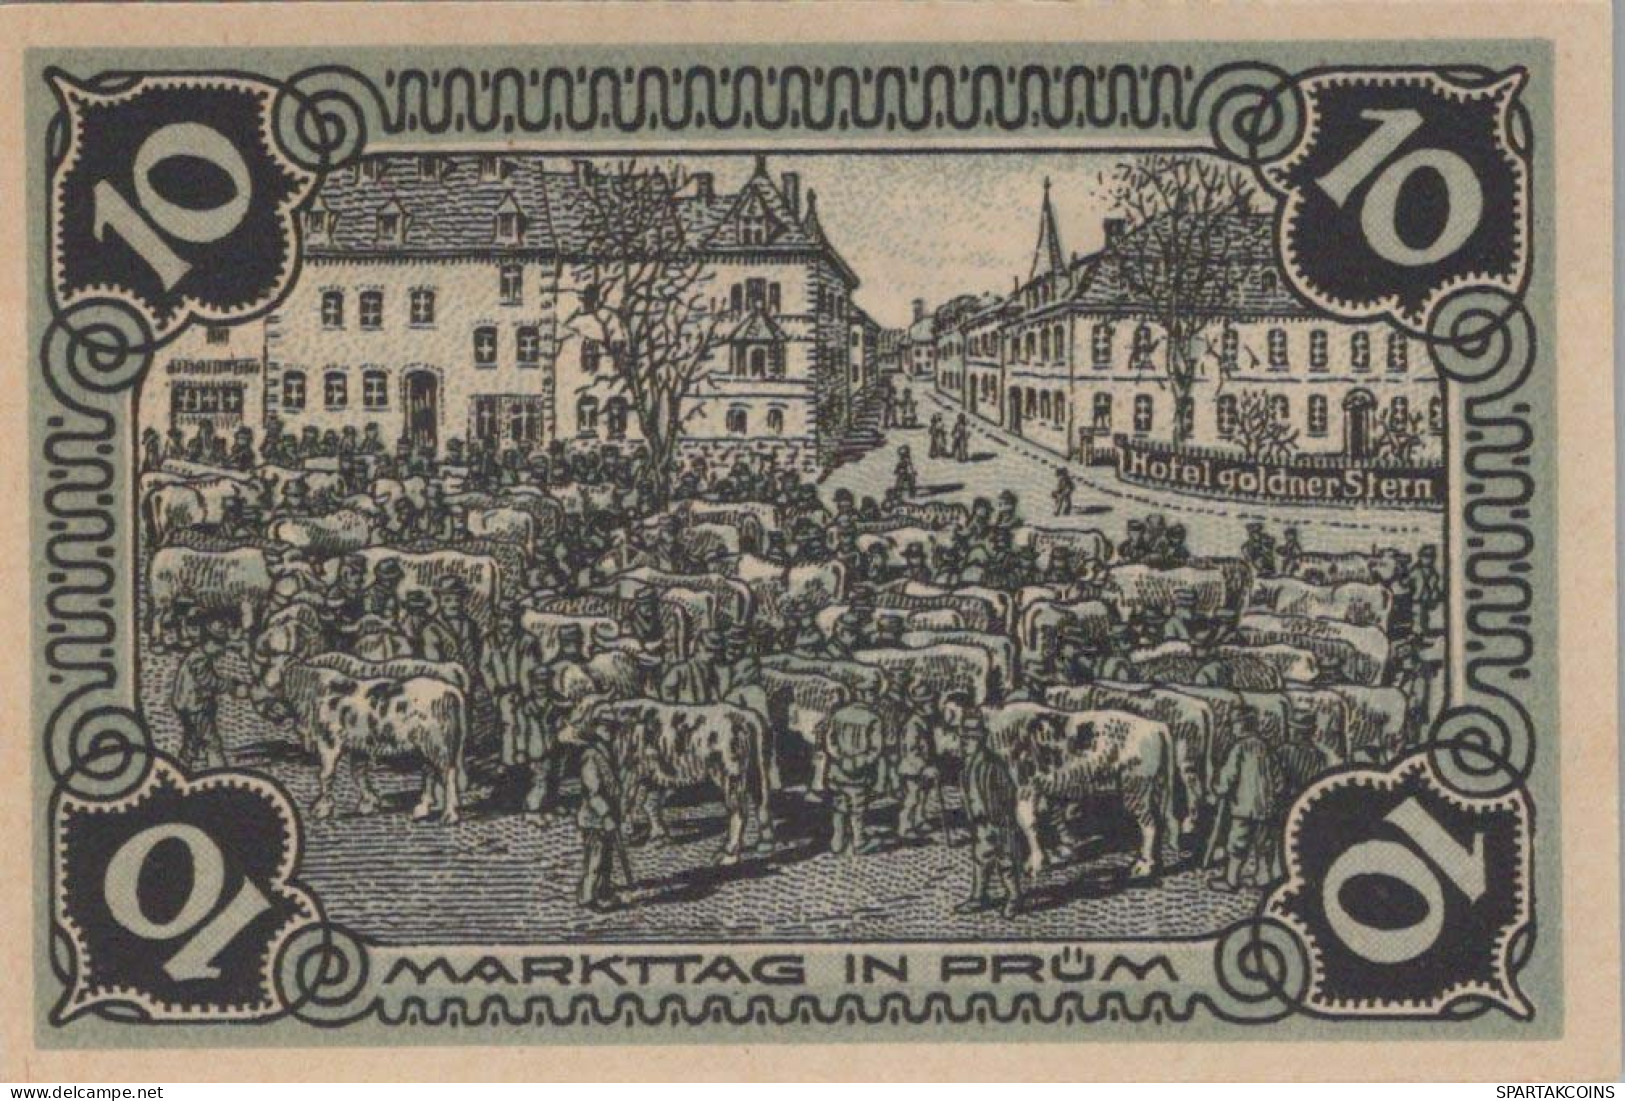 10 PFENNIG 1921 Stadt PRÜM Rhine UNC DEUTSCHLAND Notgeld Banknote #PB769 - [11] Local Banknote Issues